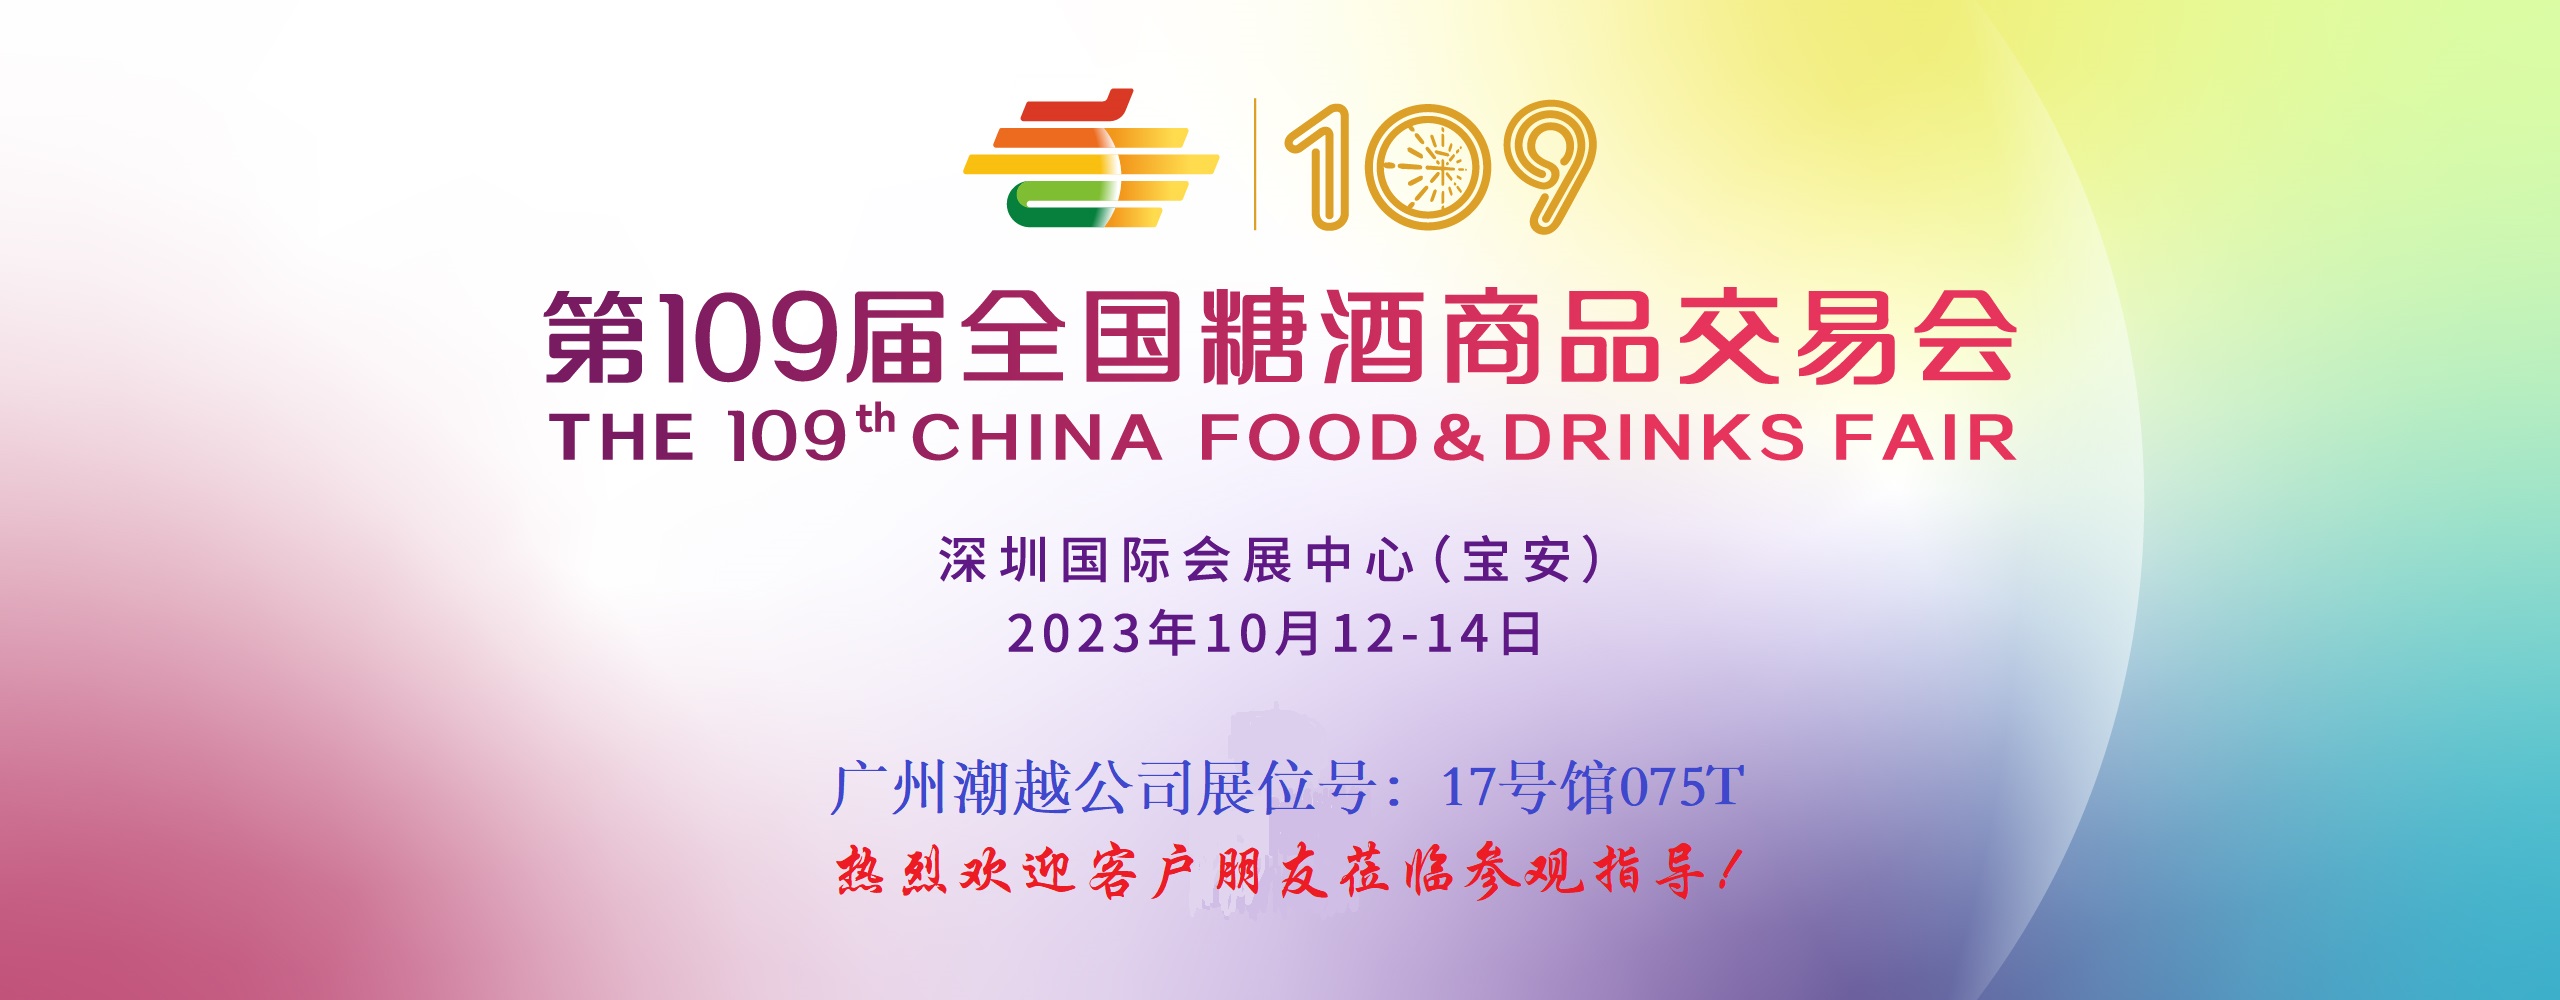 广州潮越参展第109届全国糖酒商品交易会